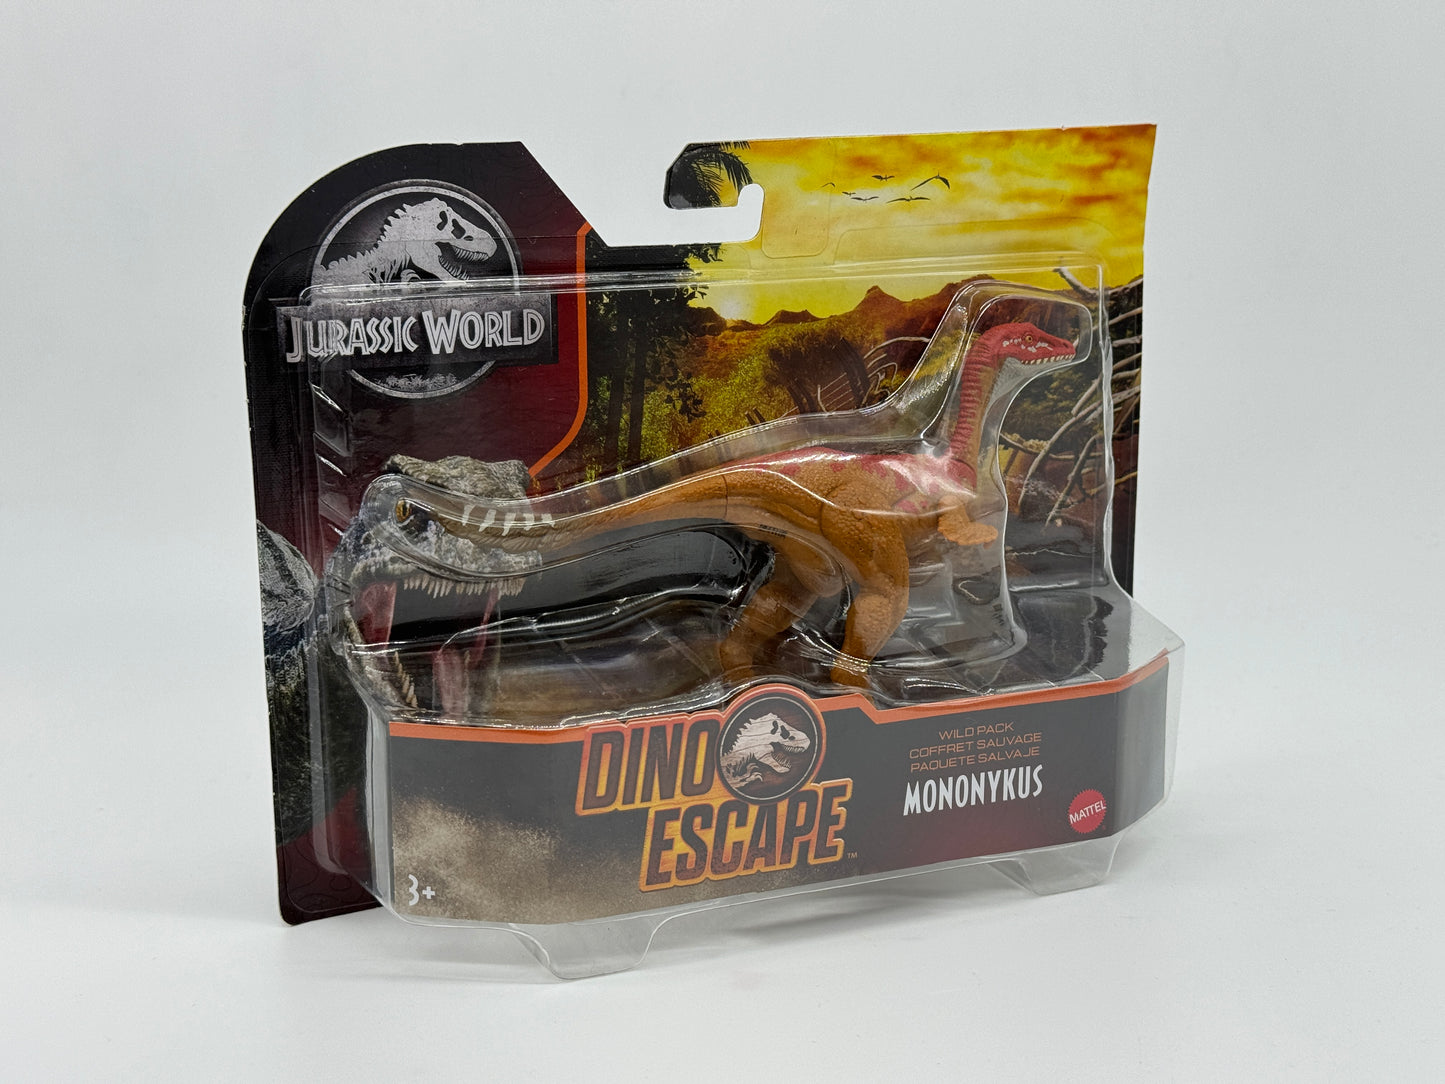 Jurassic World Dino Escape Wild Pack "Mononykus" Wildnis Set Wave 3